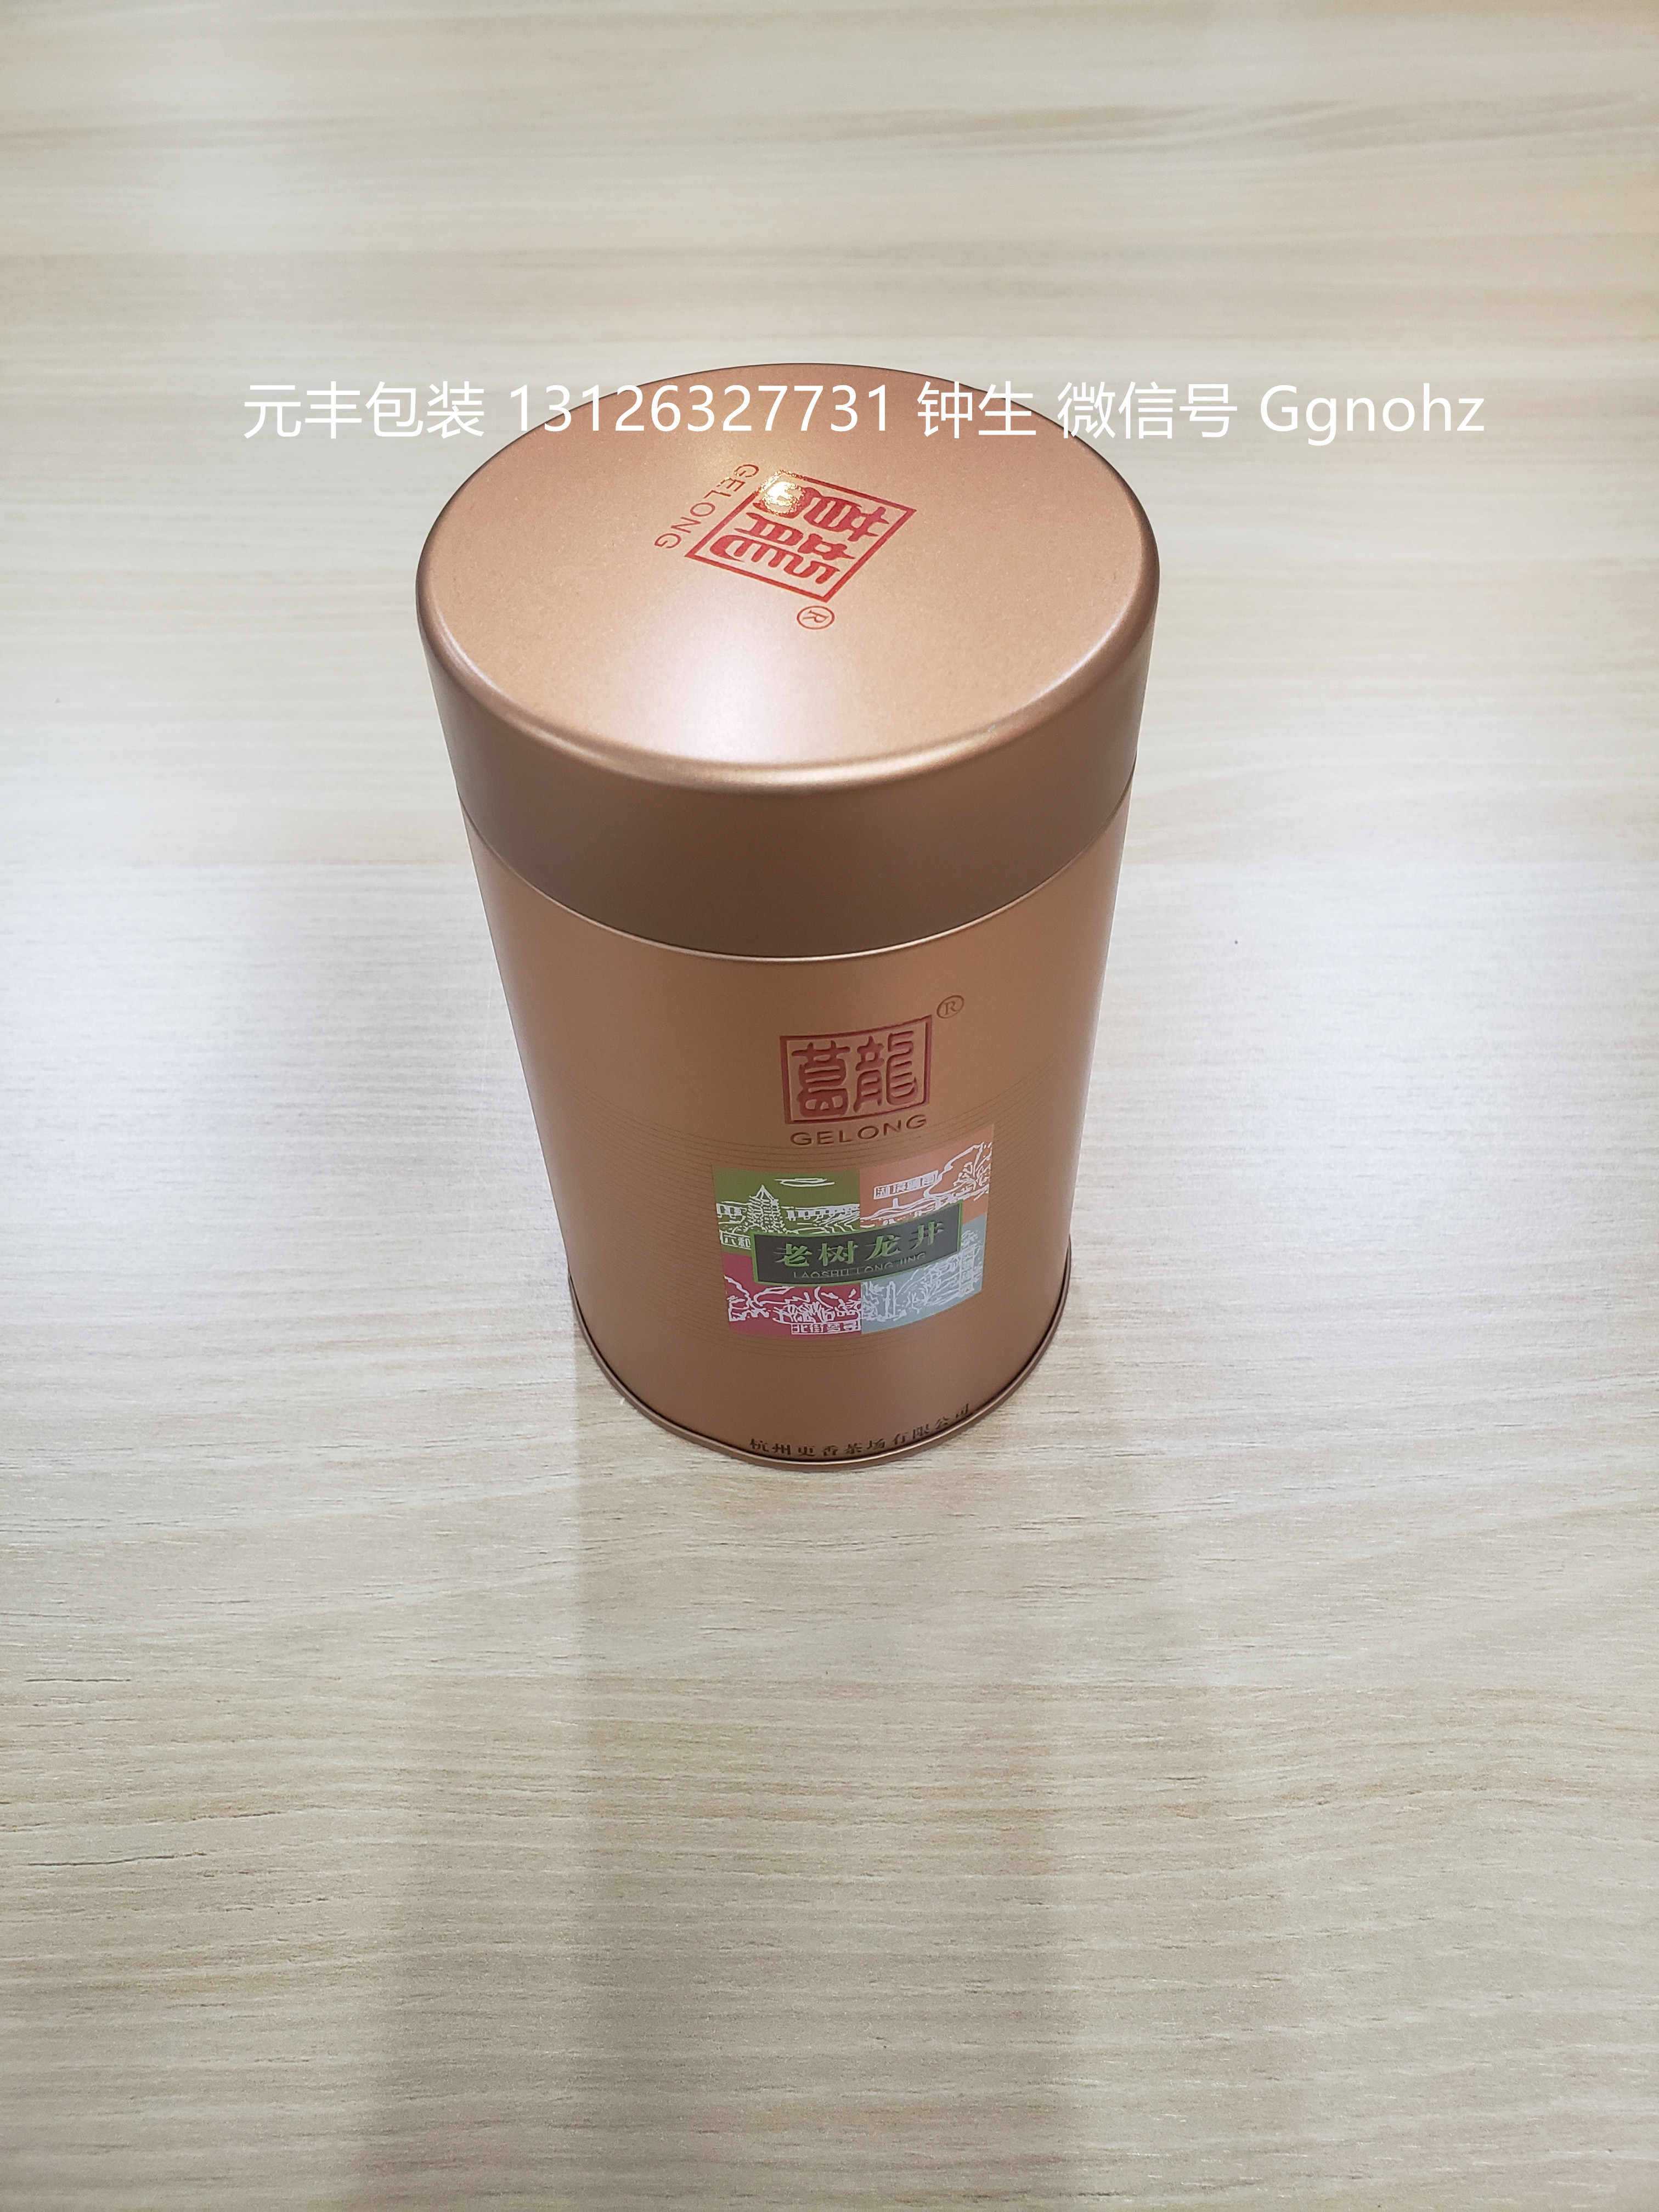 惠州市圆形茶叶马口铁罐厂家圆形茶叶马口铁罐，绿茶铁骨包装厂家，茶叶包装小铁罐